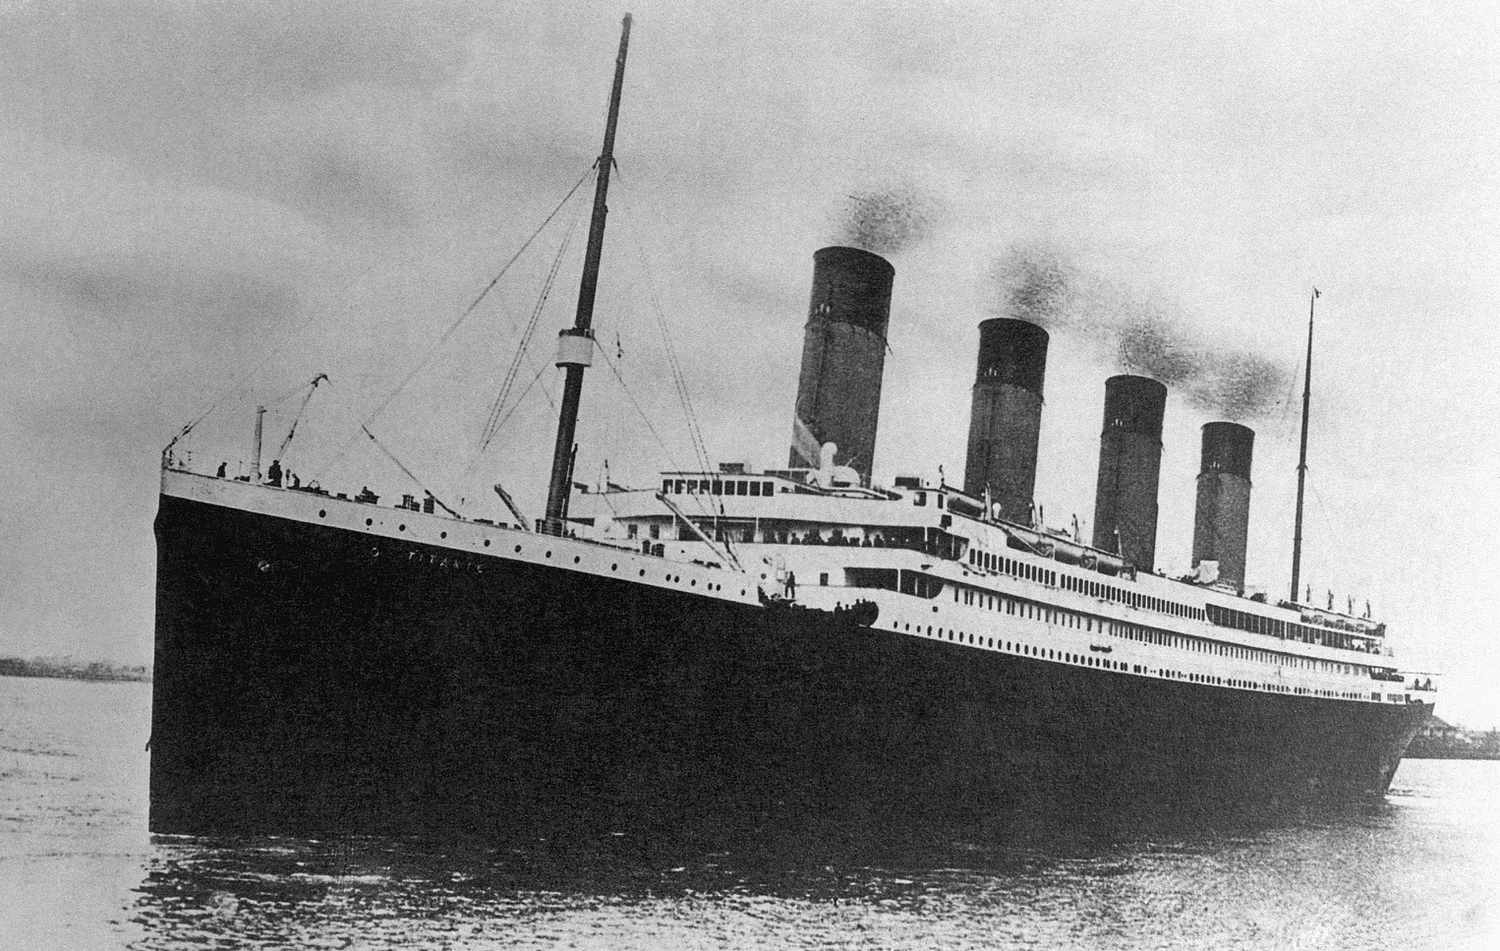 Từ vụ tàu thám hiểm Titanic mất tích: Nhìn lại thảm kịch hàng hải thảm khốc nhất lịch sử vĩnh viễn gây ám ảnh nhân loại - Ảnh 6.